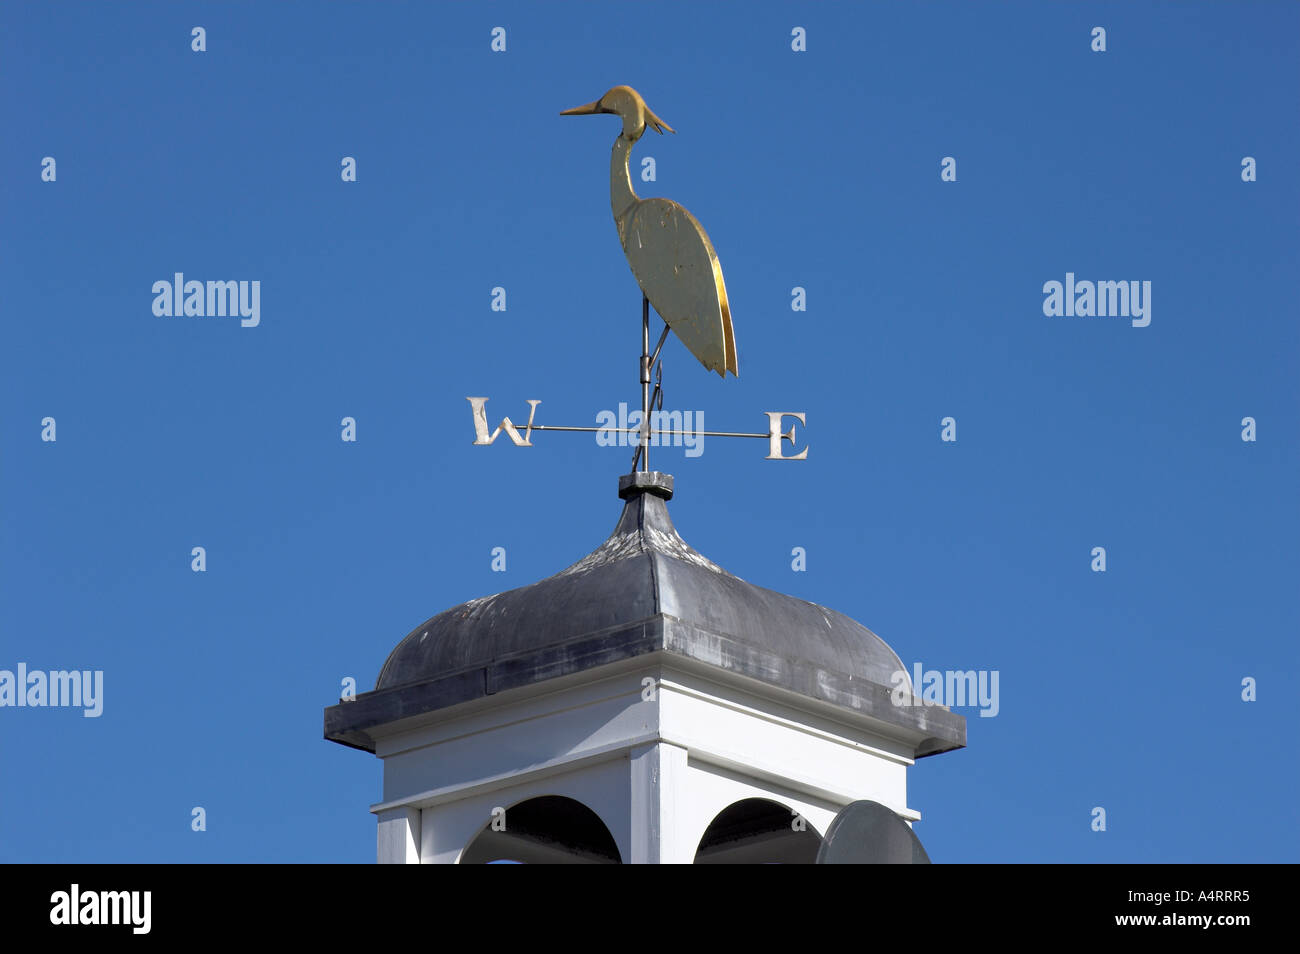 Veleta representando una cigüeña, adornando un tejado contra un cielo azul brillante. Foto de stock